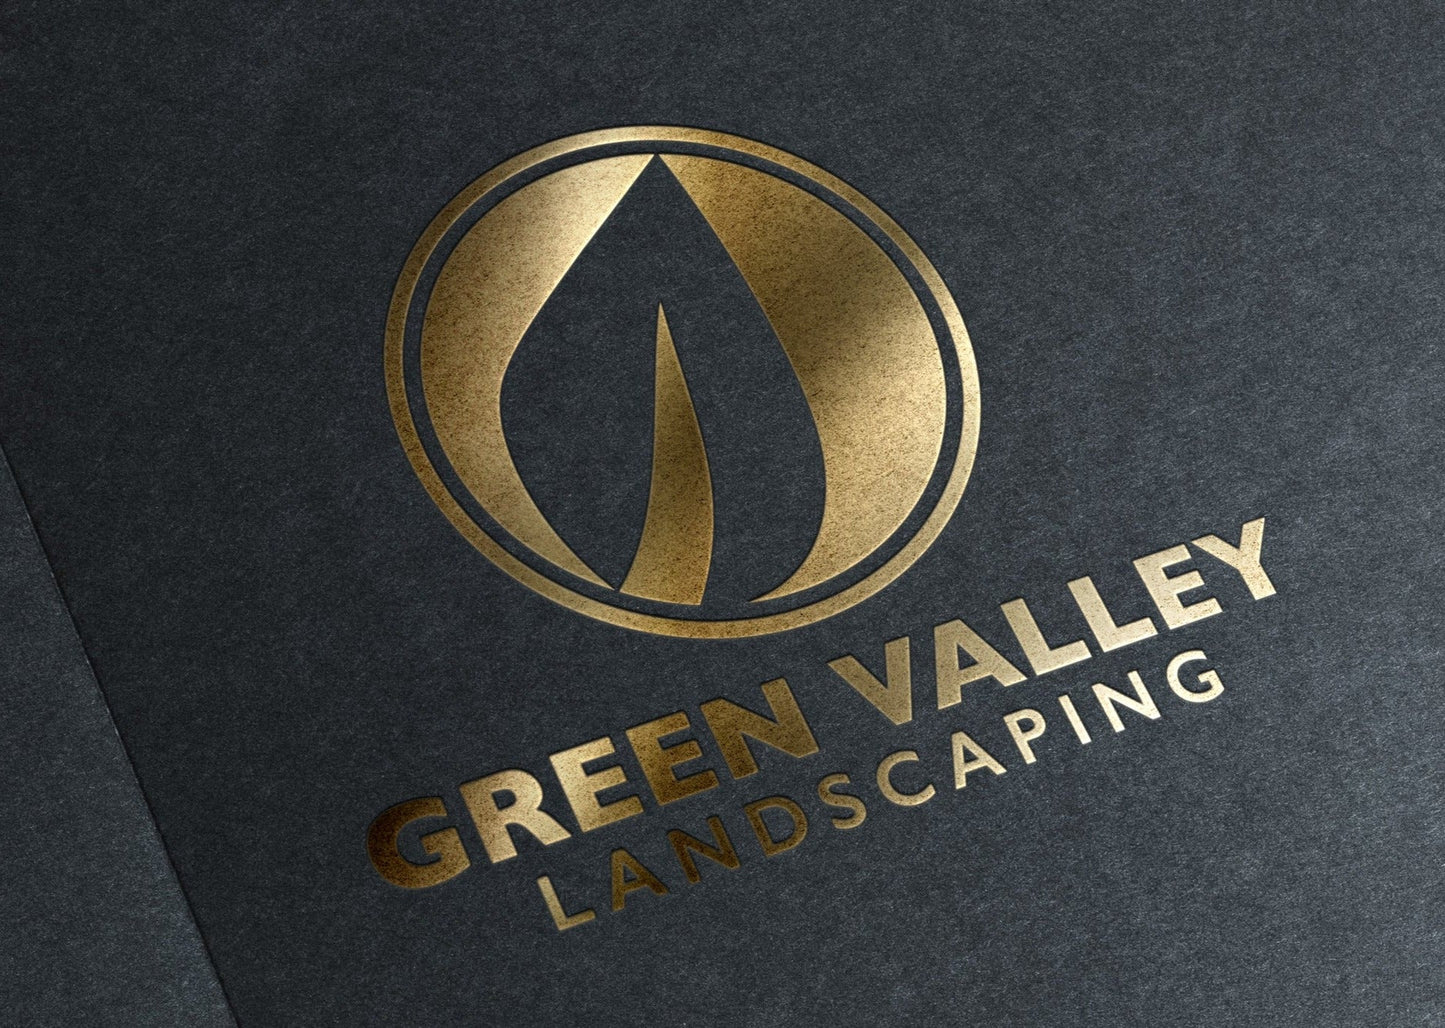 Landscaping Business Logo | Landscape Logo | Lawn Care Logo | Landscaper Logo | Professional Logo Design | Lawn Maintenance | Leaf Logo